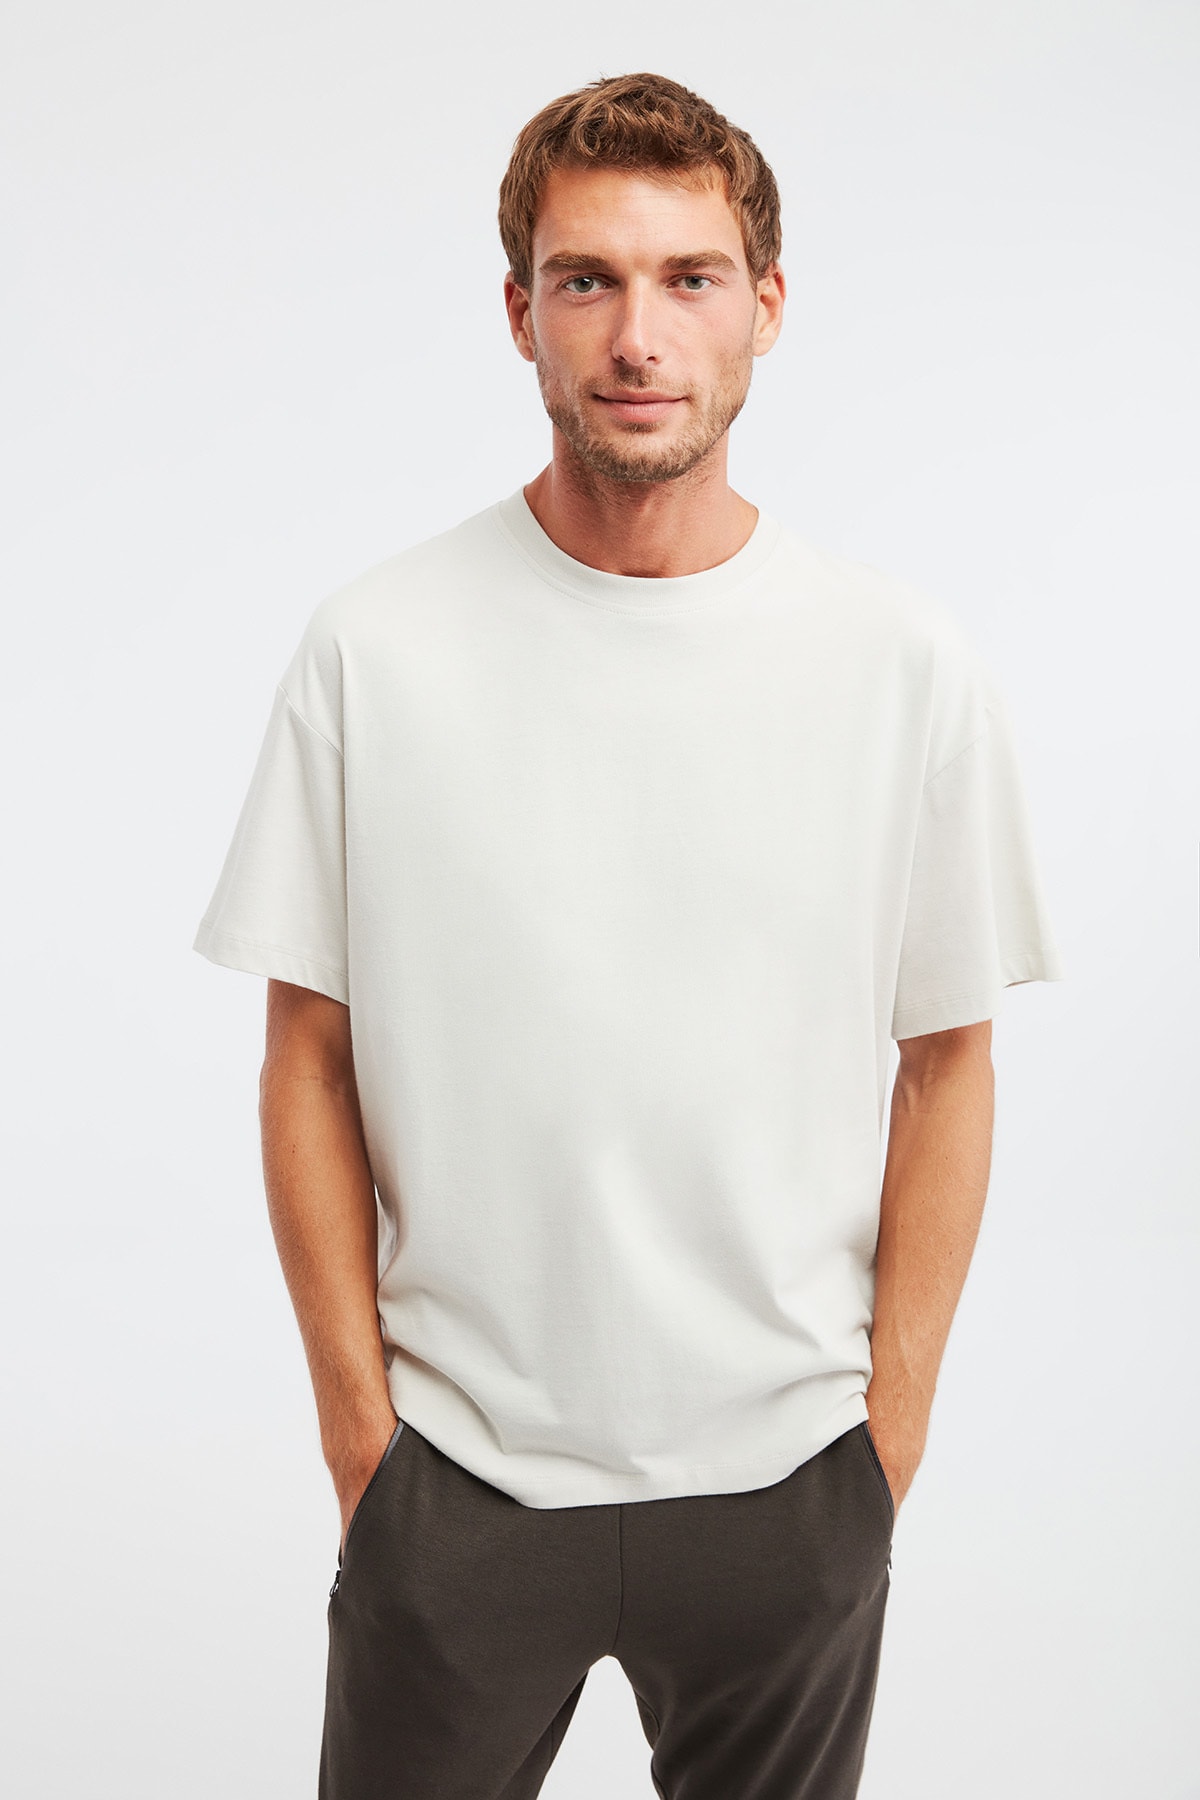 Levně GRIMELANGE Jett Men's Oversize Fit 100% Cotton Thick Textured Stone Color T-shirt